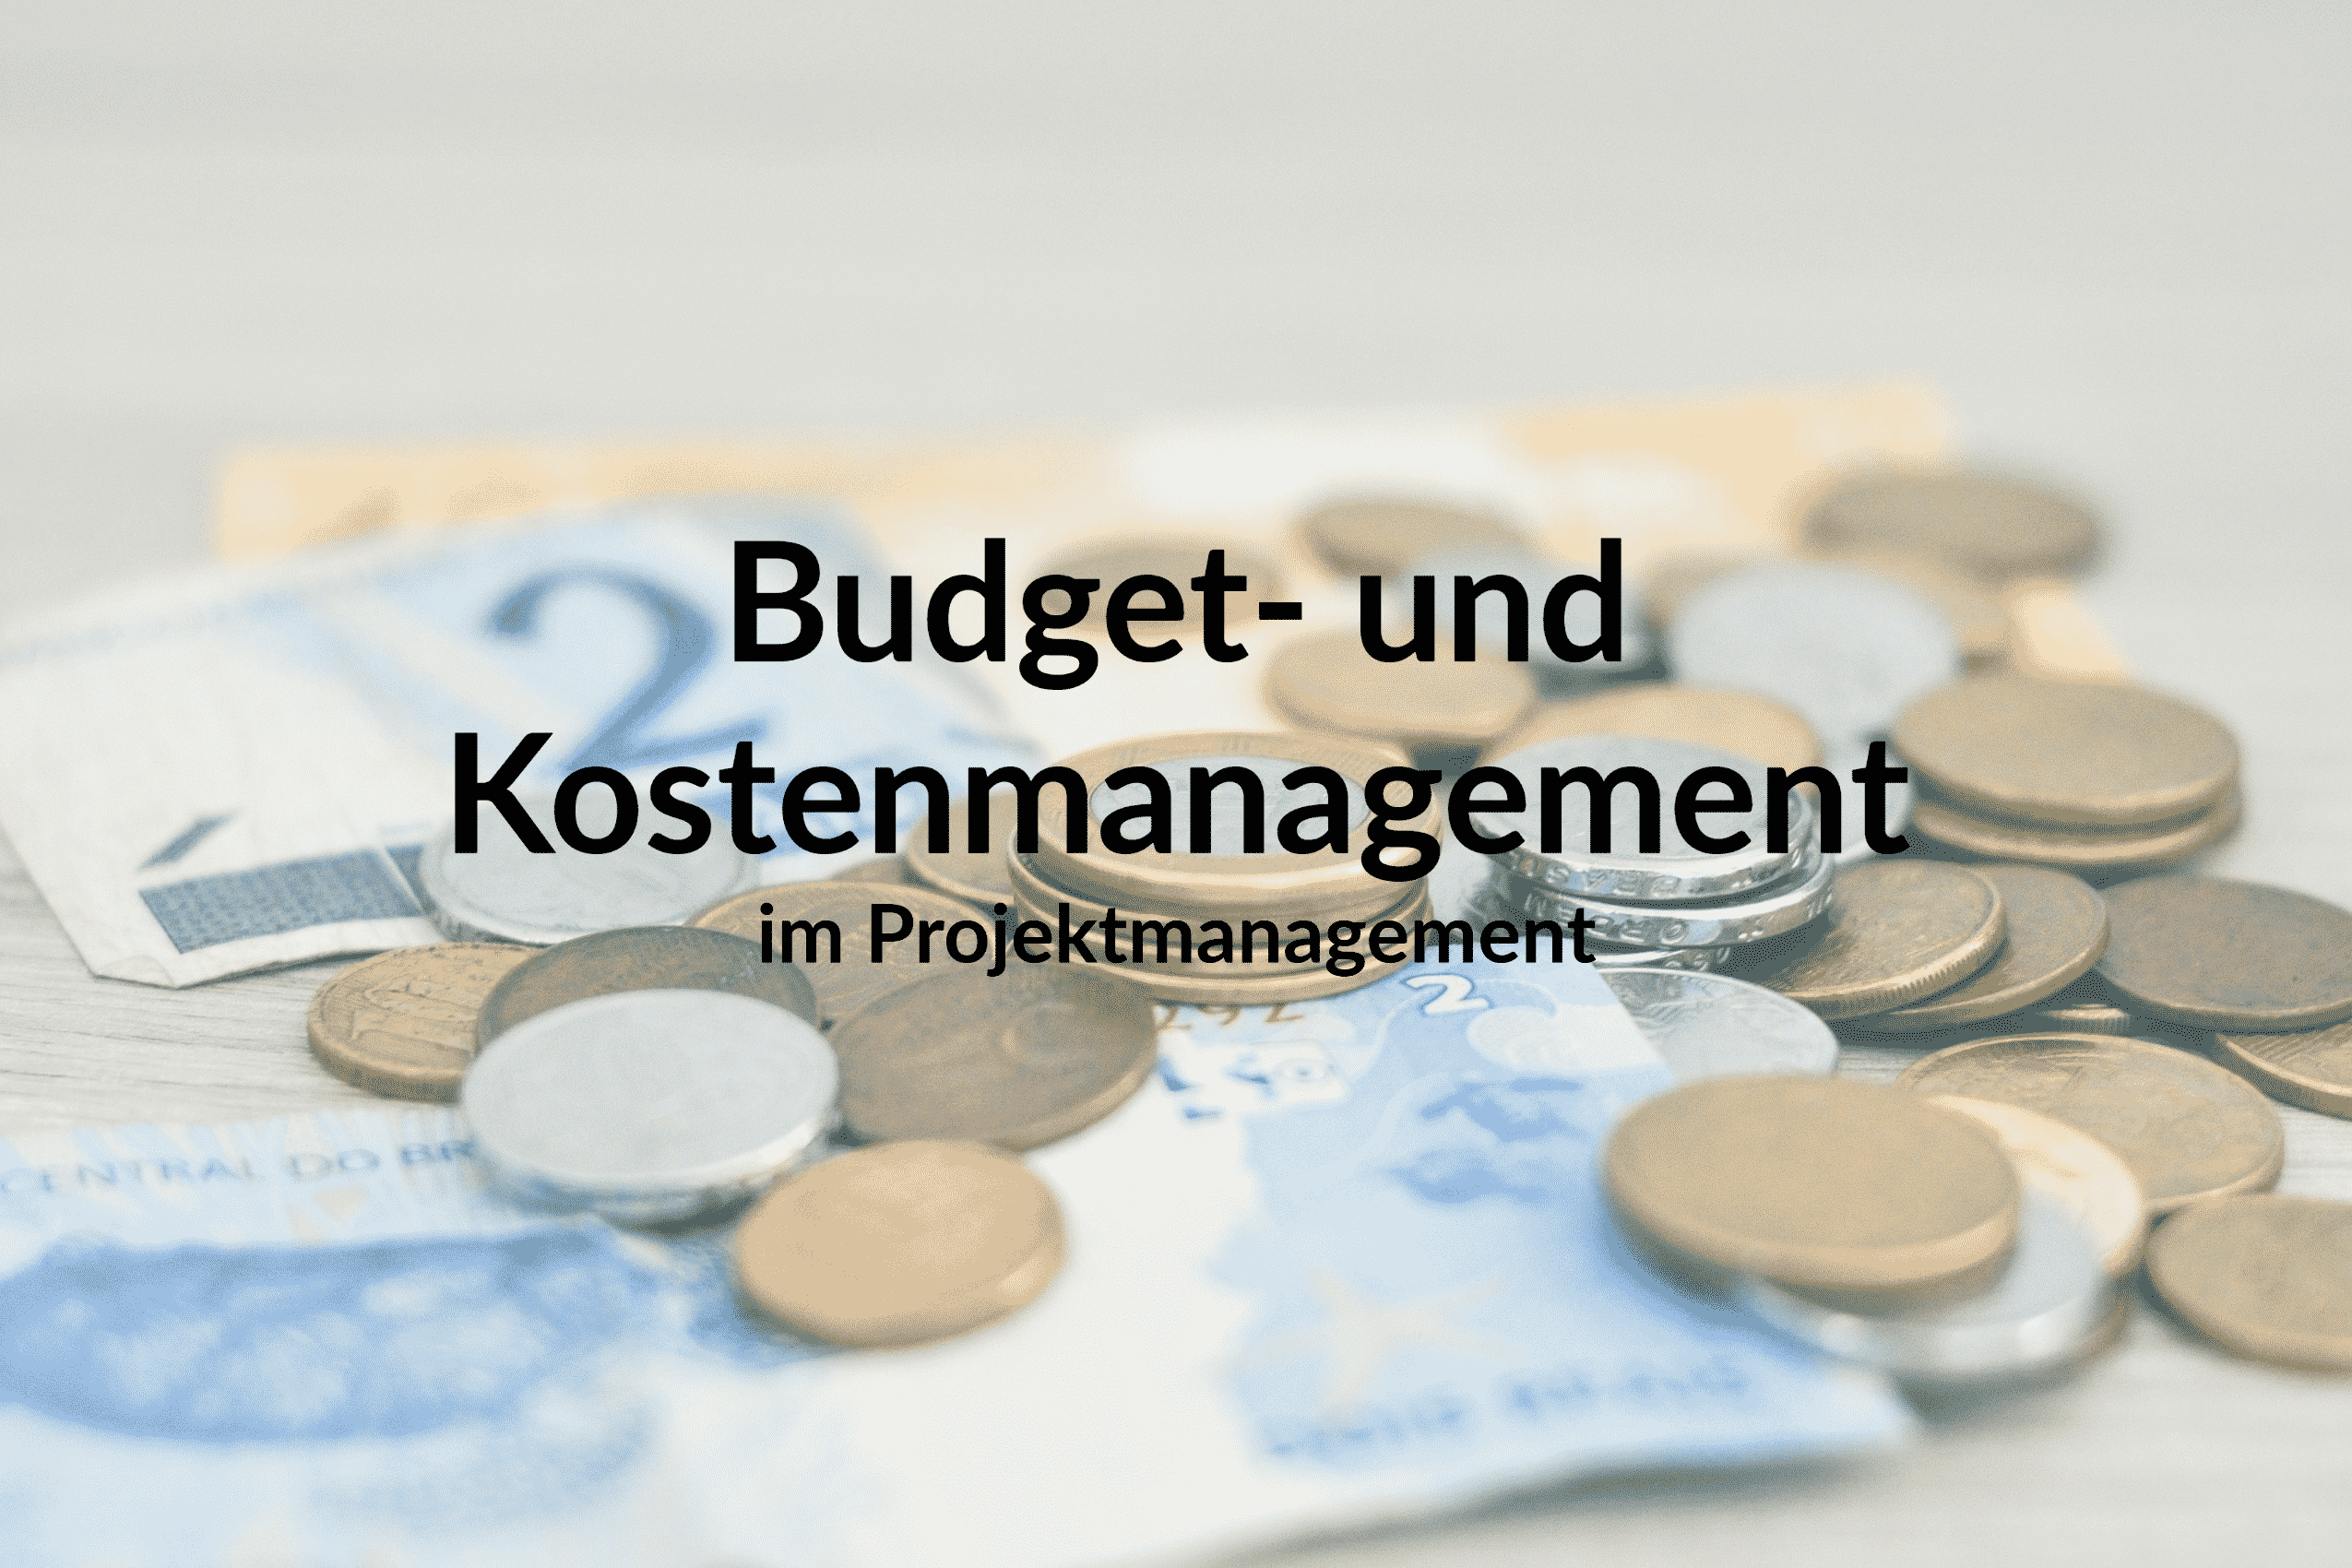 Budget- und Kostenmanagement